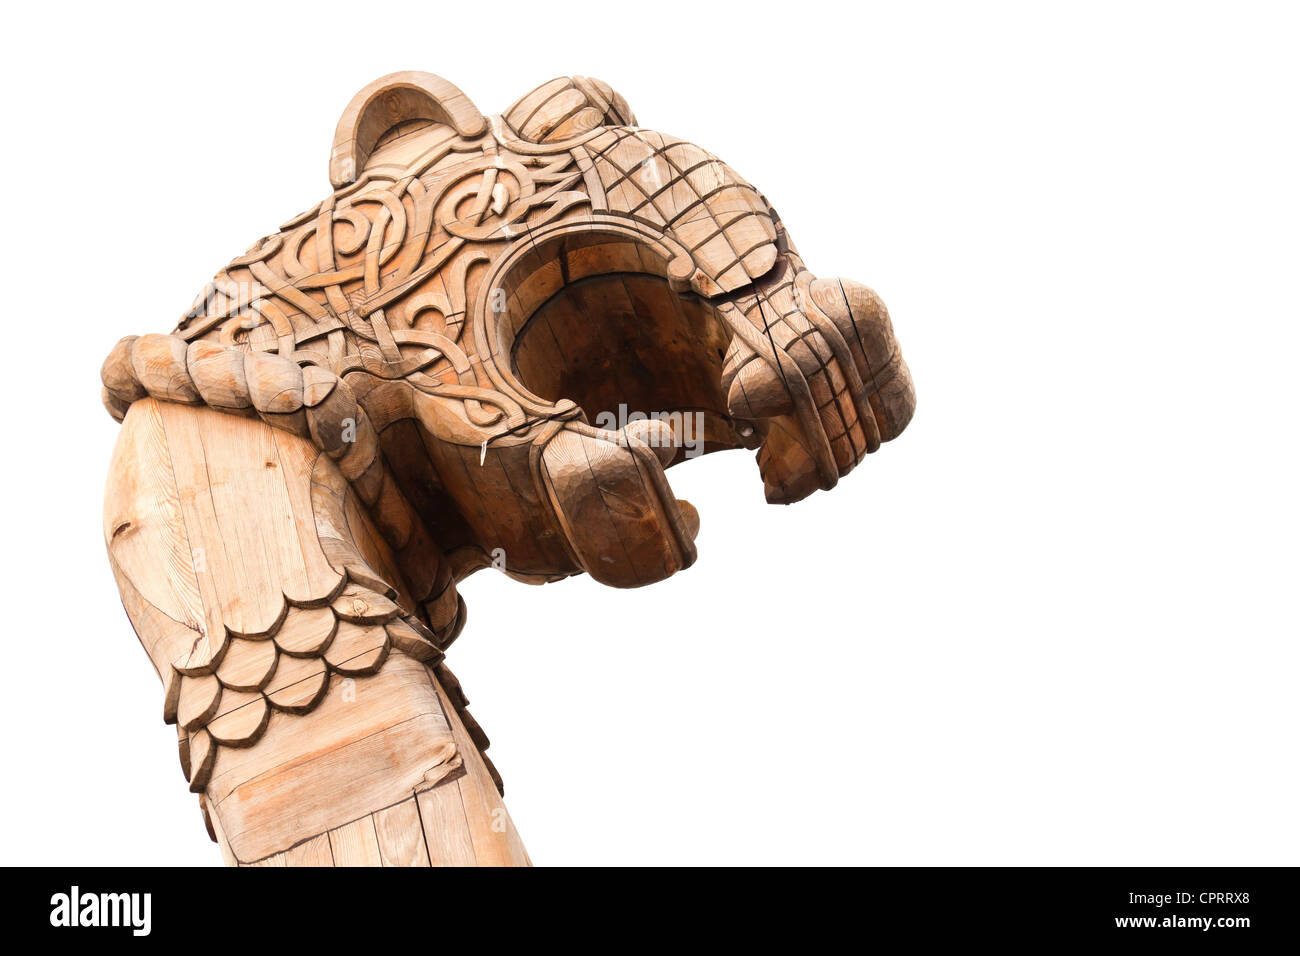 Avancorpo in legno dell'antica nave vichinga isolato su bianco Foto Stock